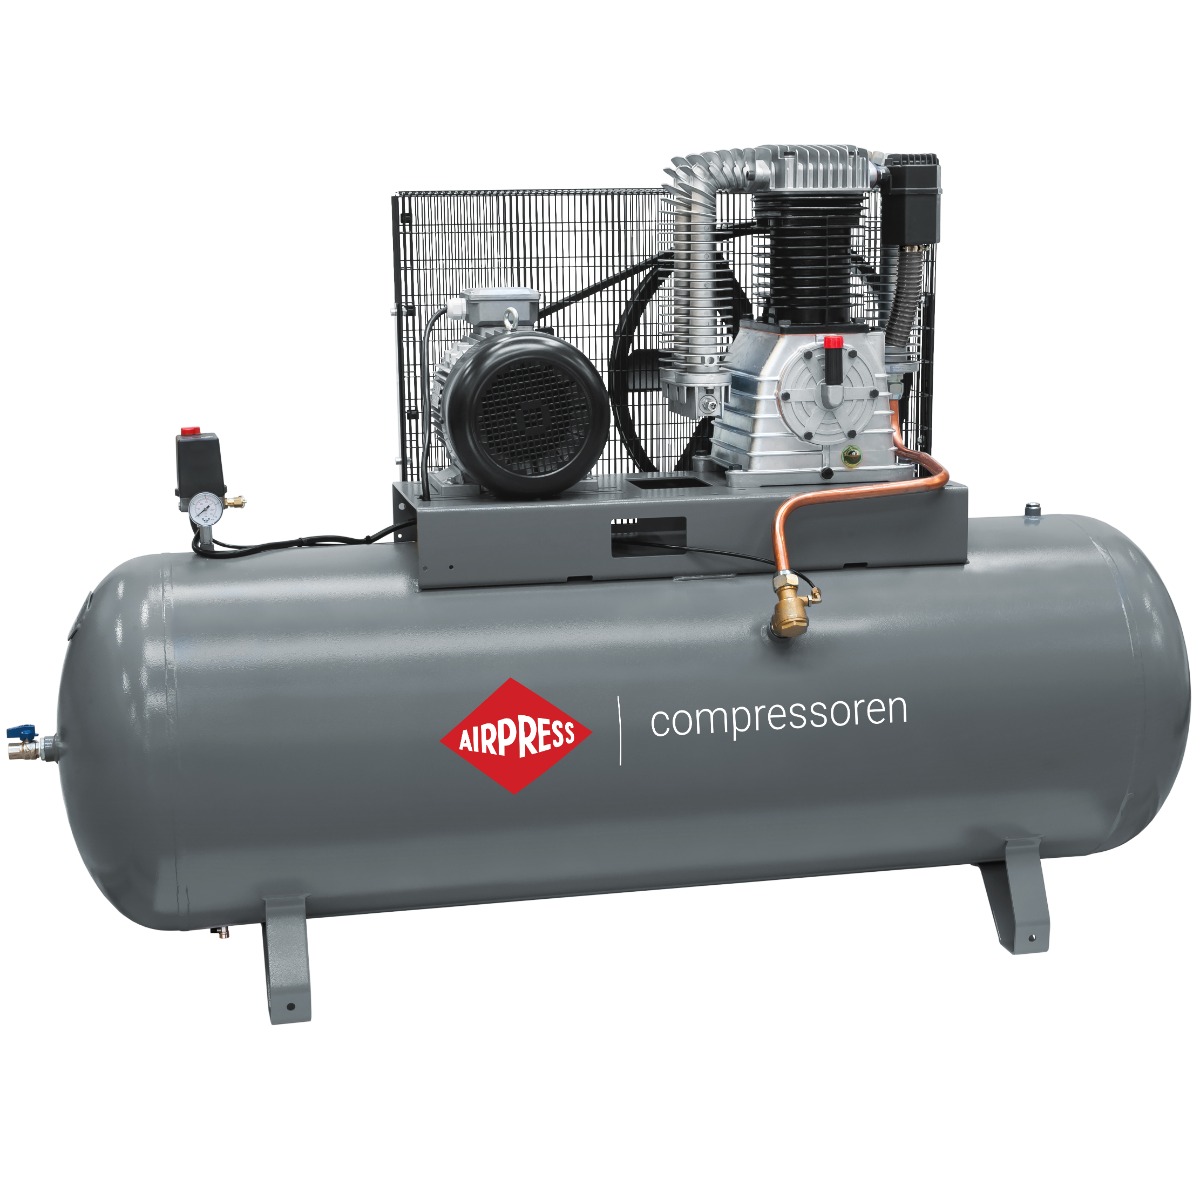 HK 1500-500 Pro compressor